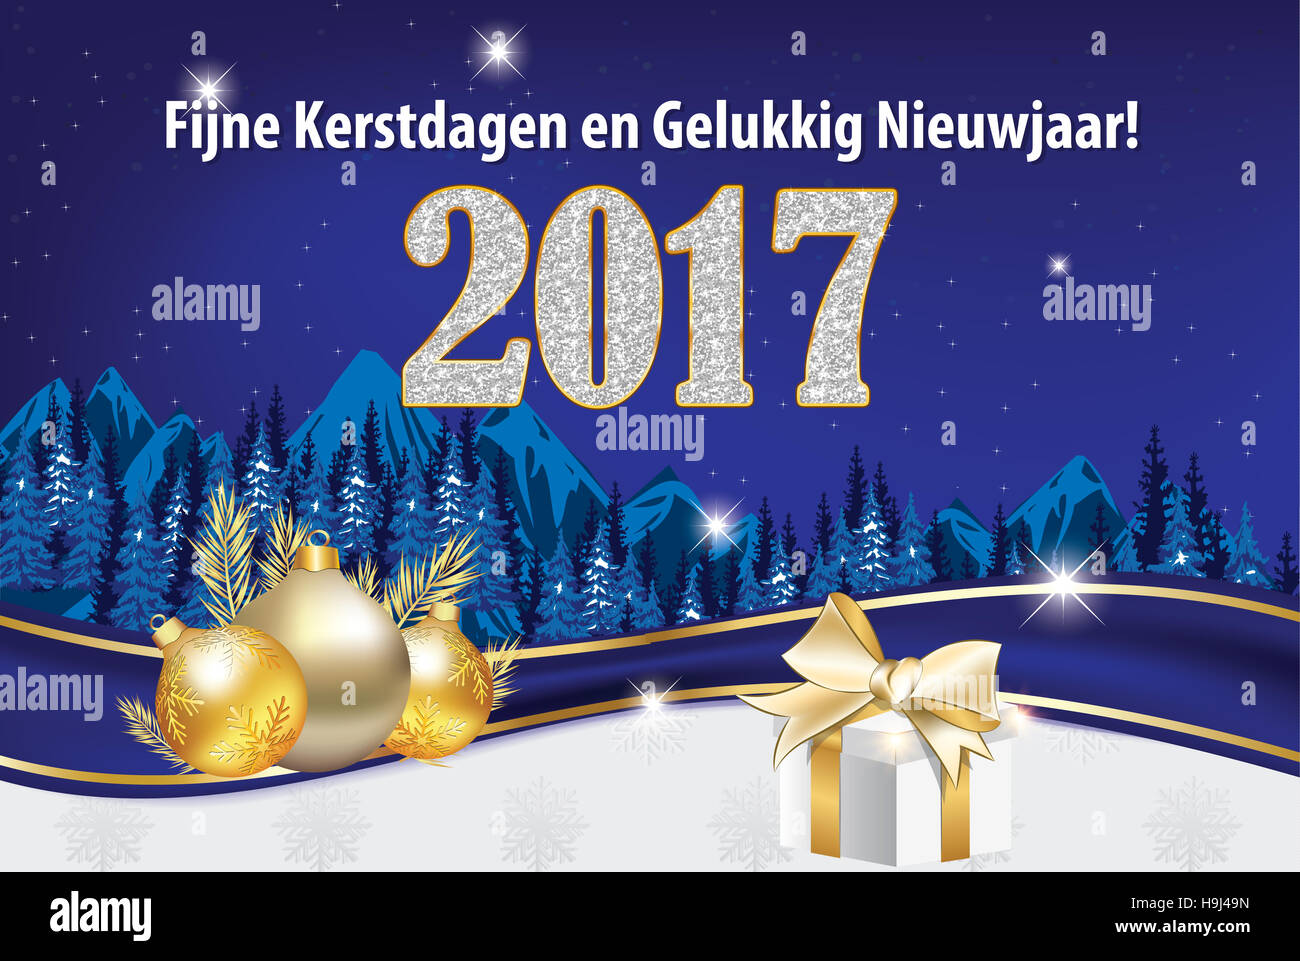 Nieuwjaarskaartje: Fijne Kerstdagen en Gelukkig Nieuwjaar! - winter kaartje om te versturen naar uw klanten of zakenpartner Stock Photo